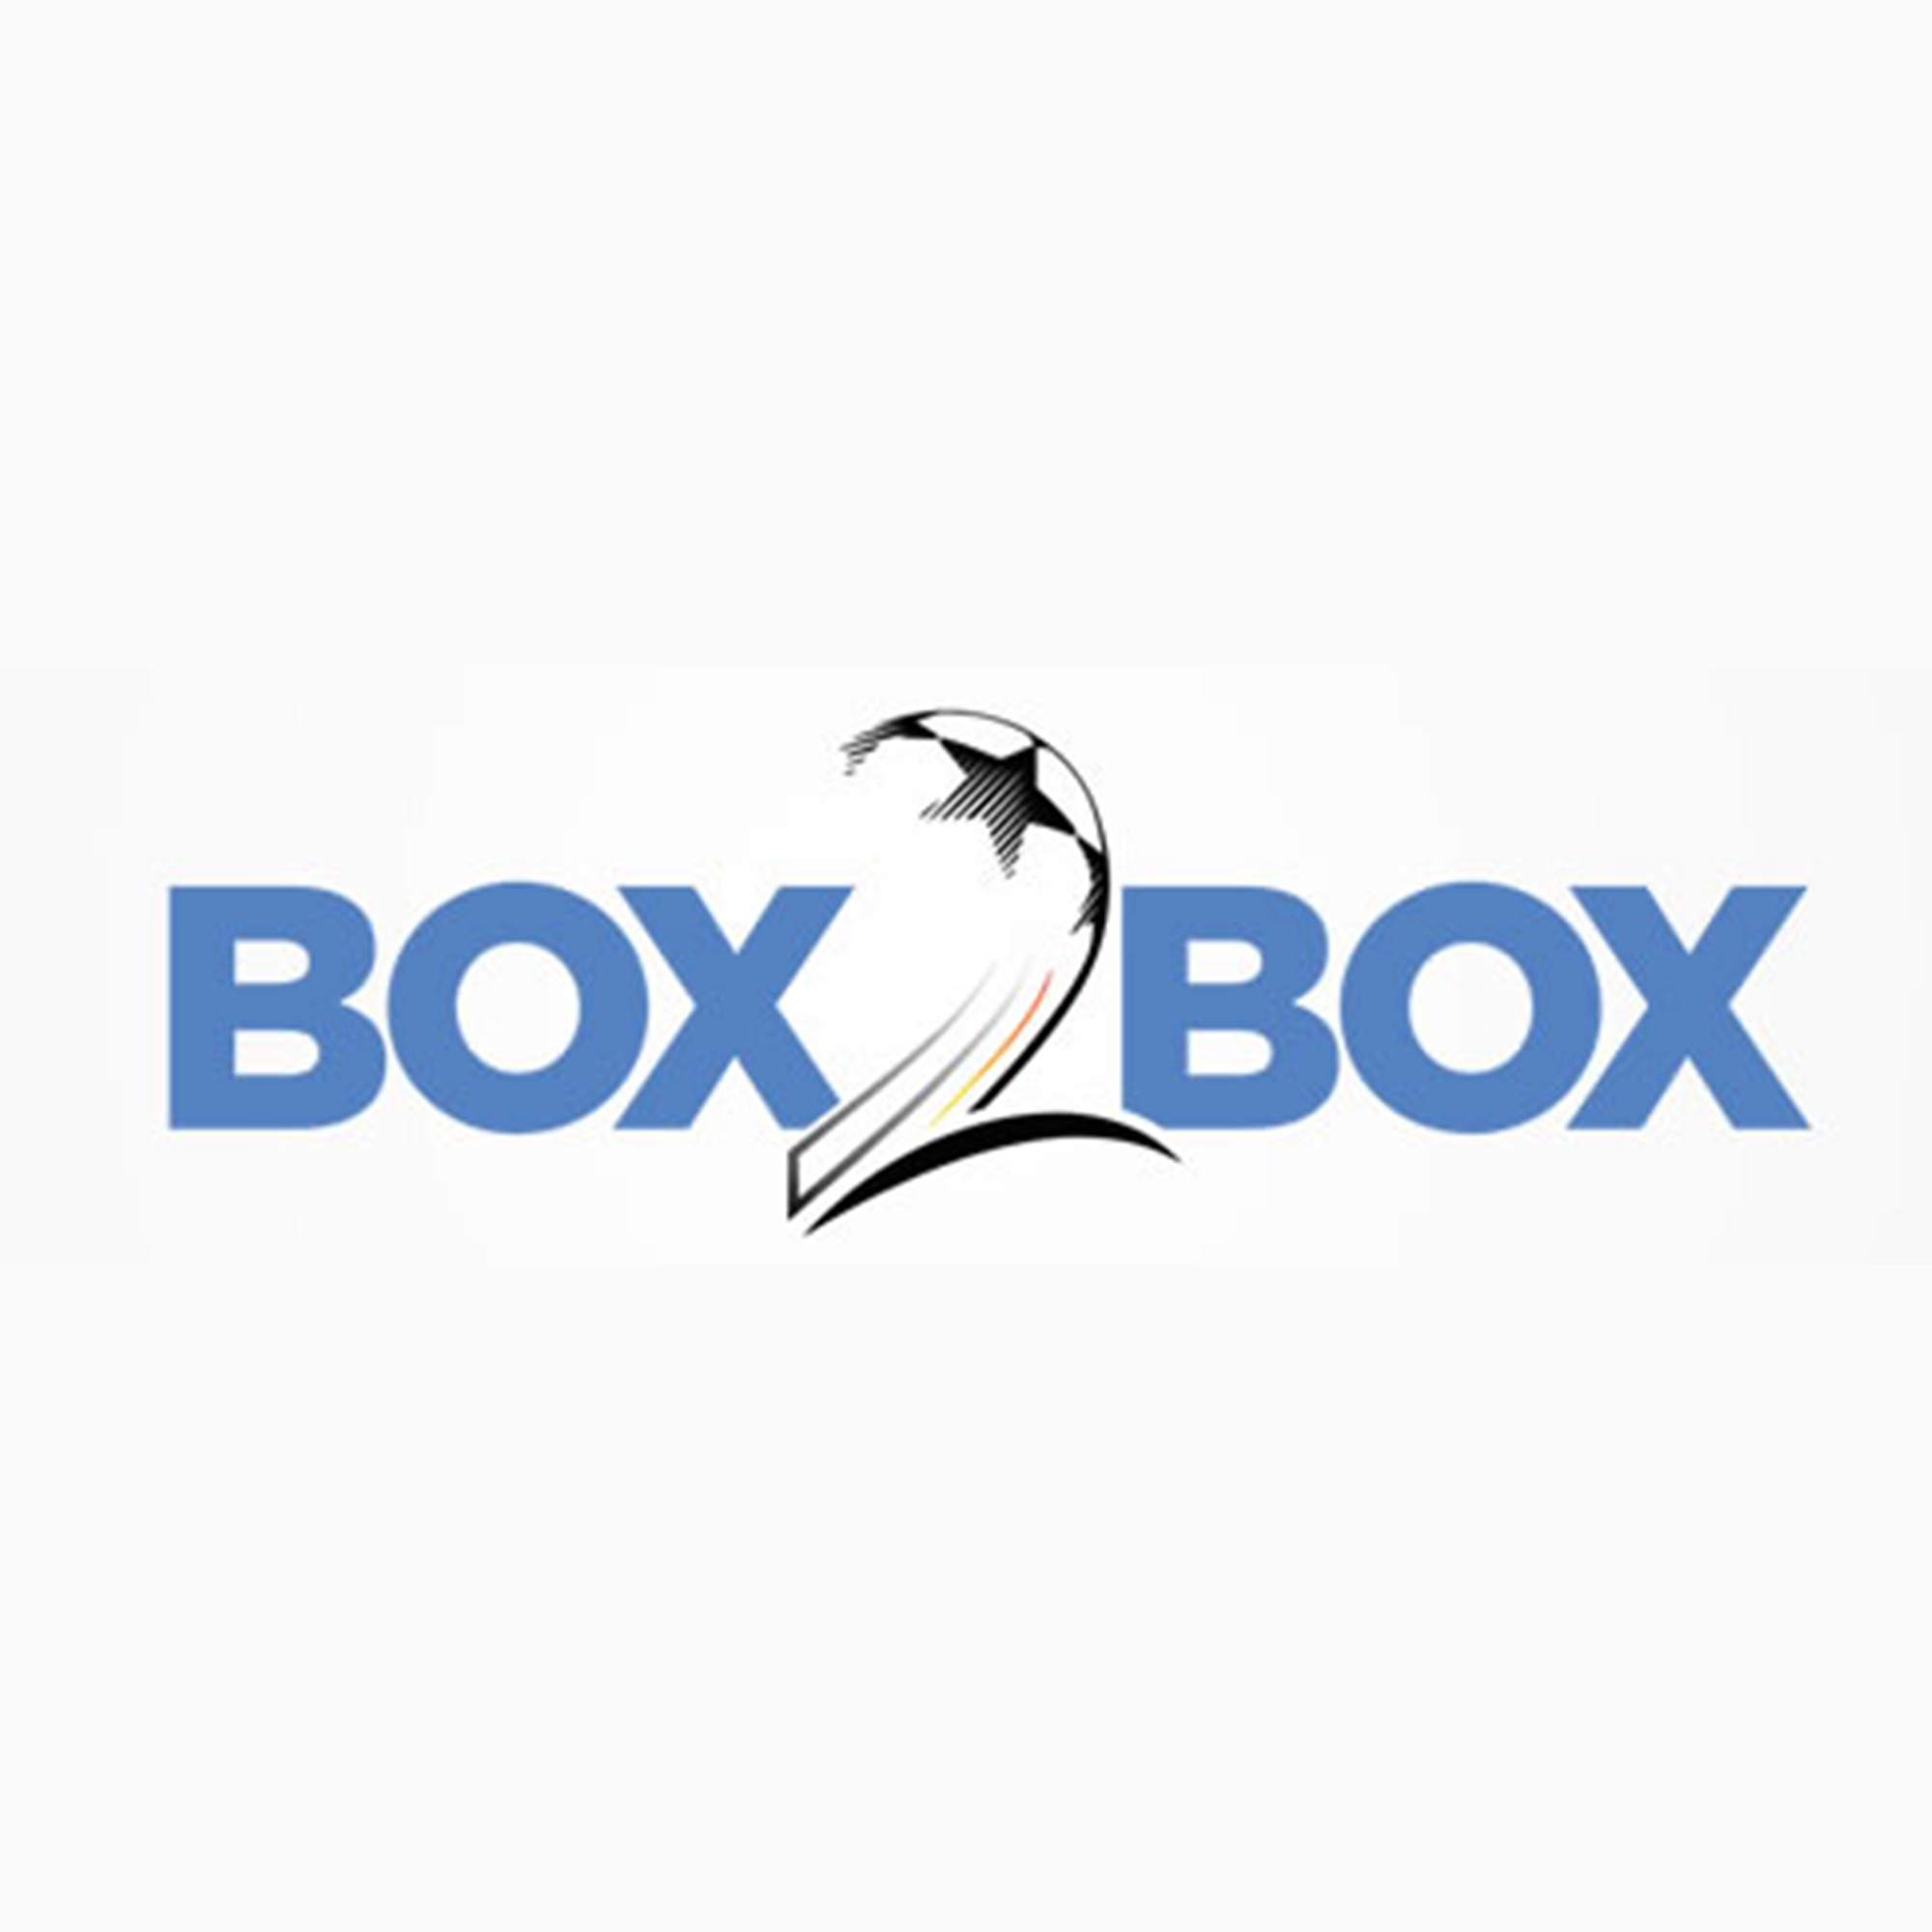 Mitch Duke on Box2Box